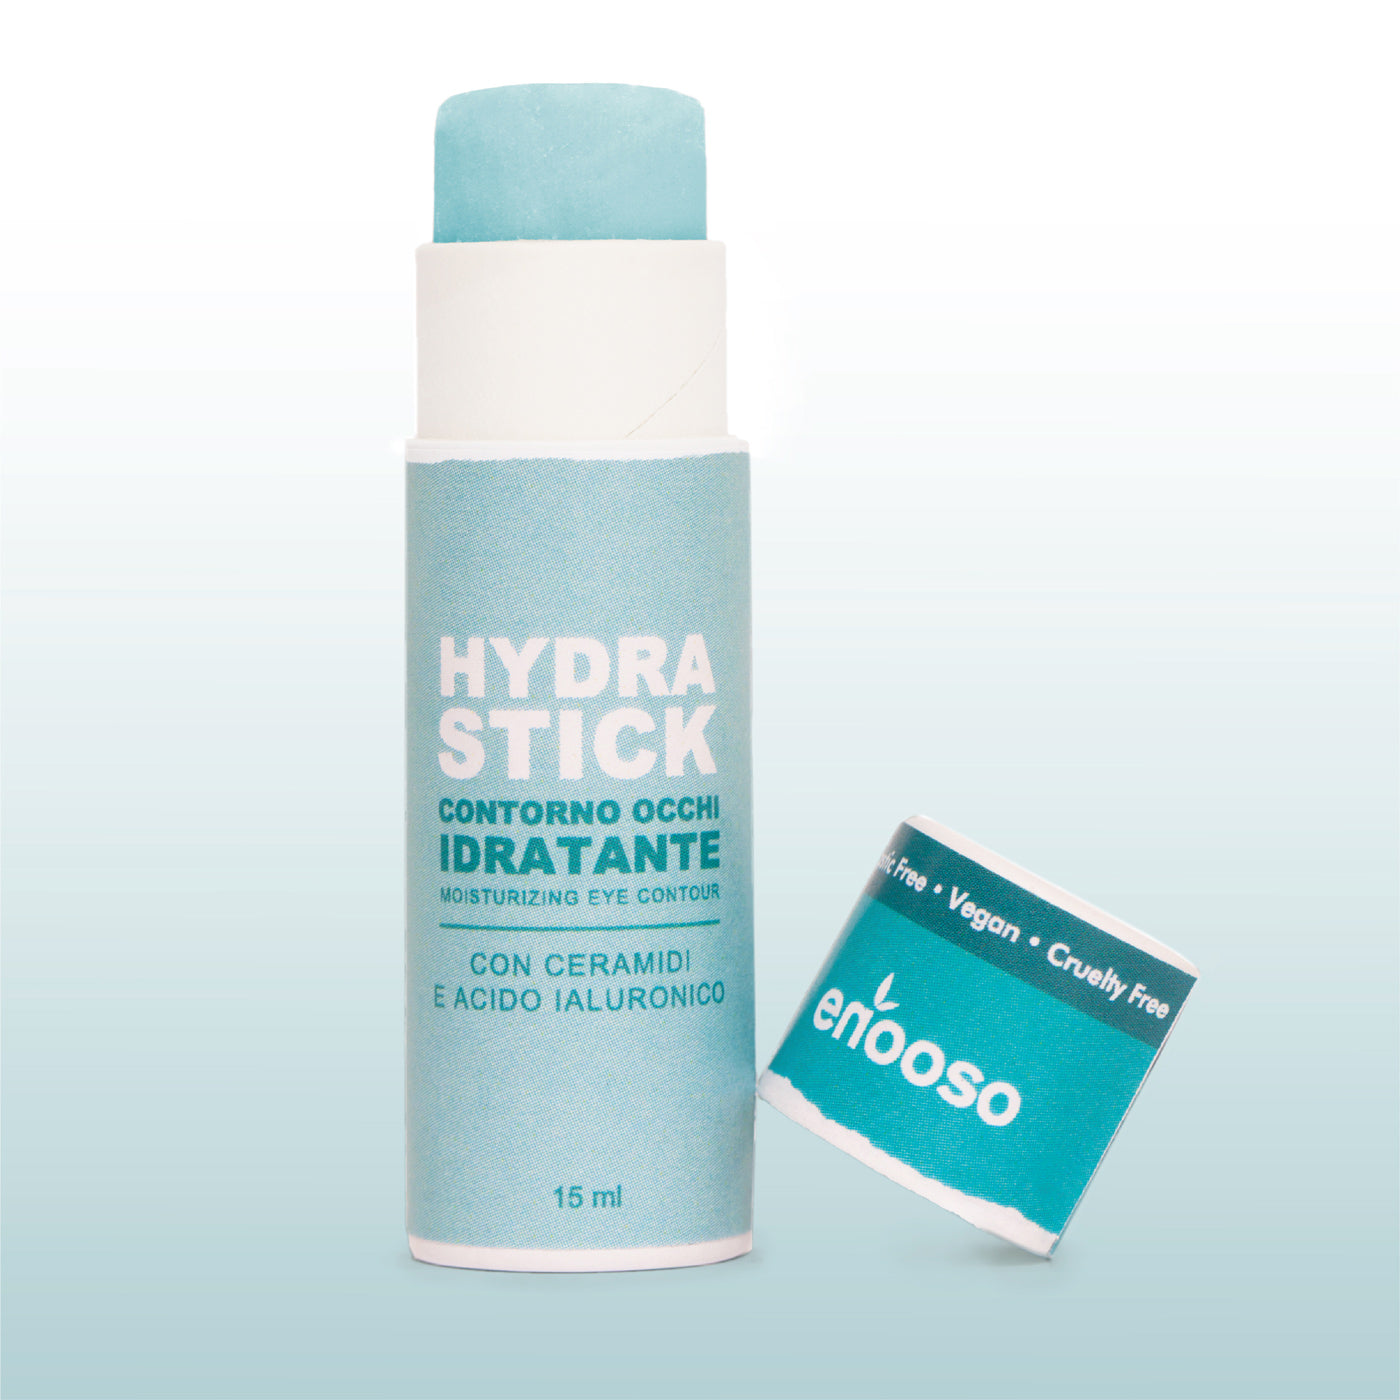 Hydra Stick - Contorno occhi idratante